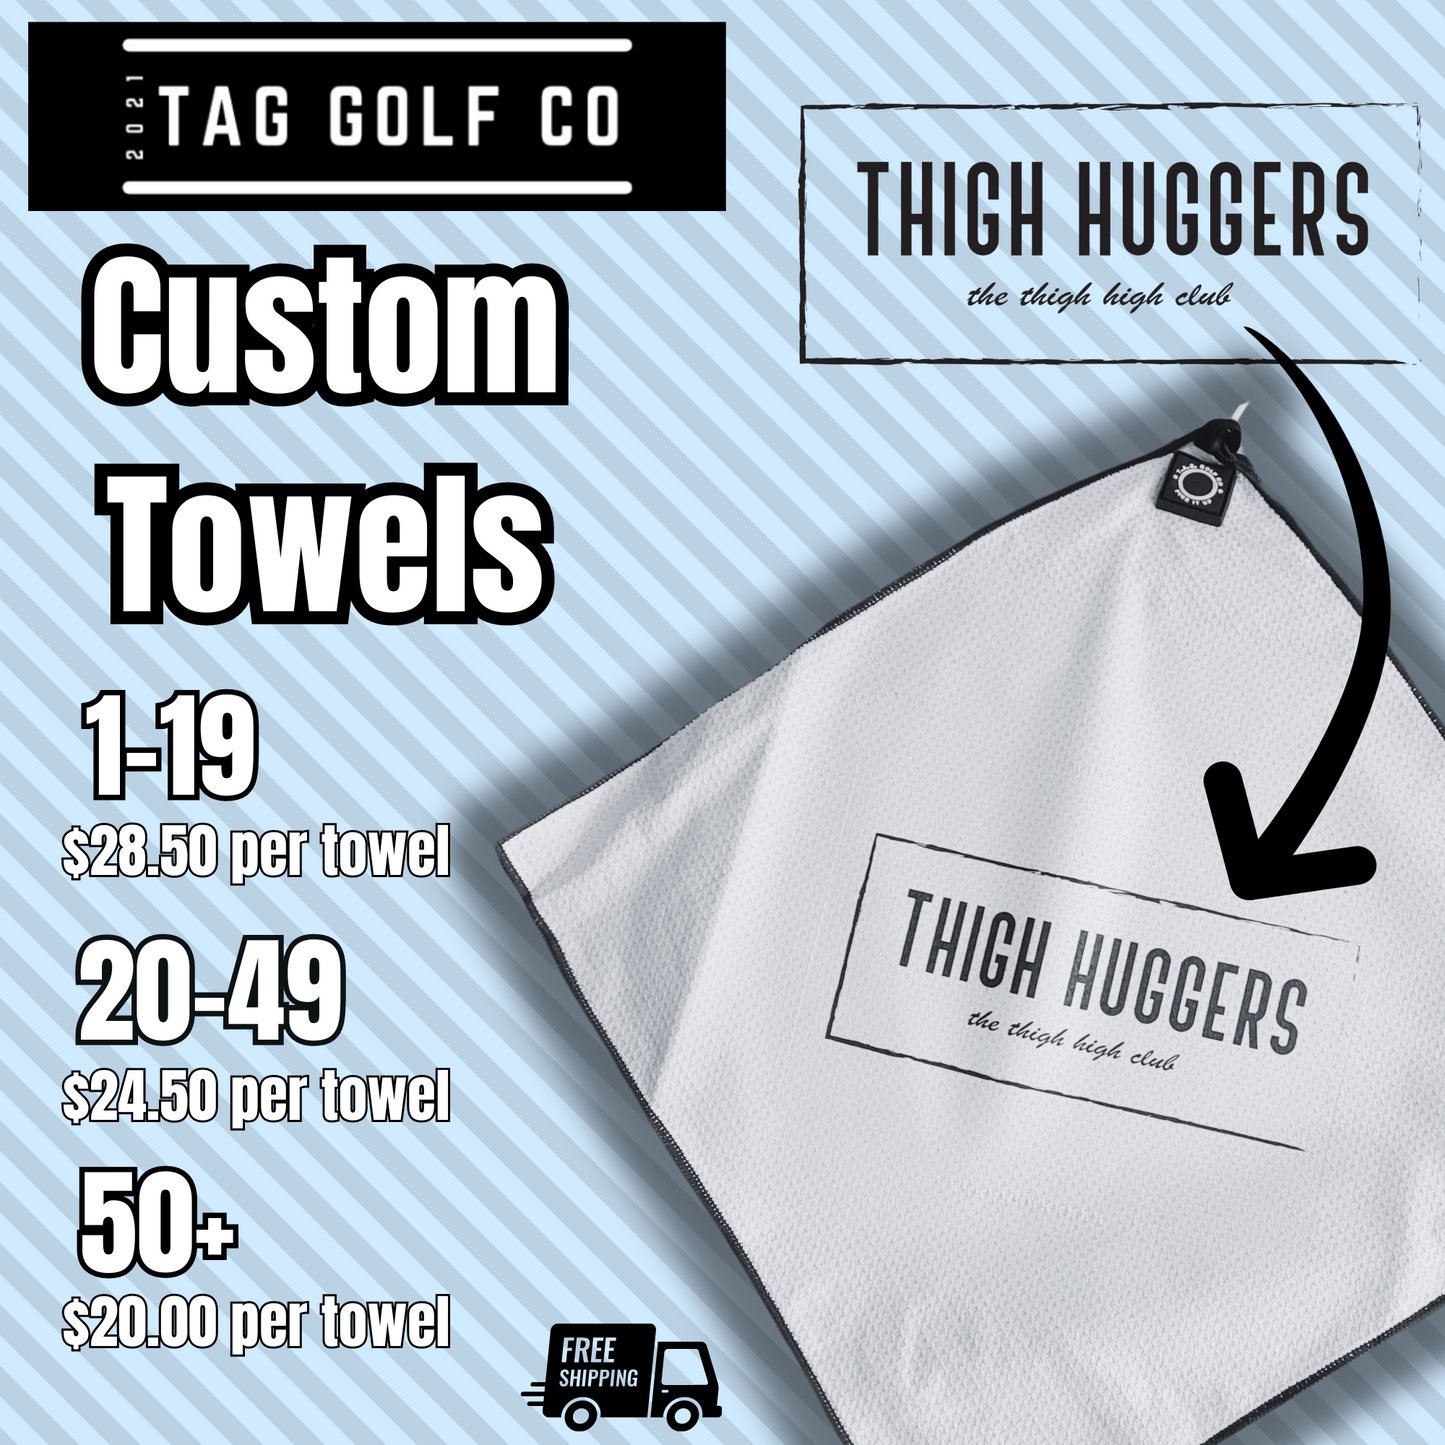 Custom Towel Orders